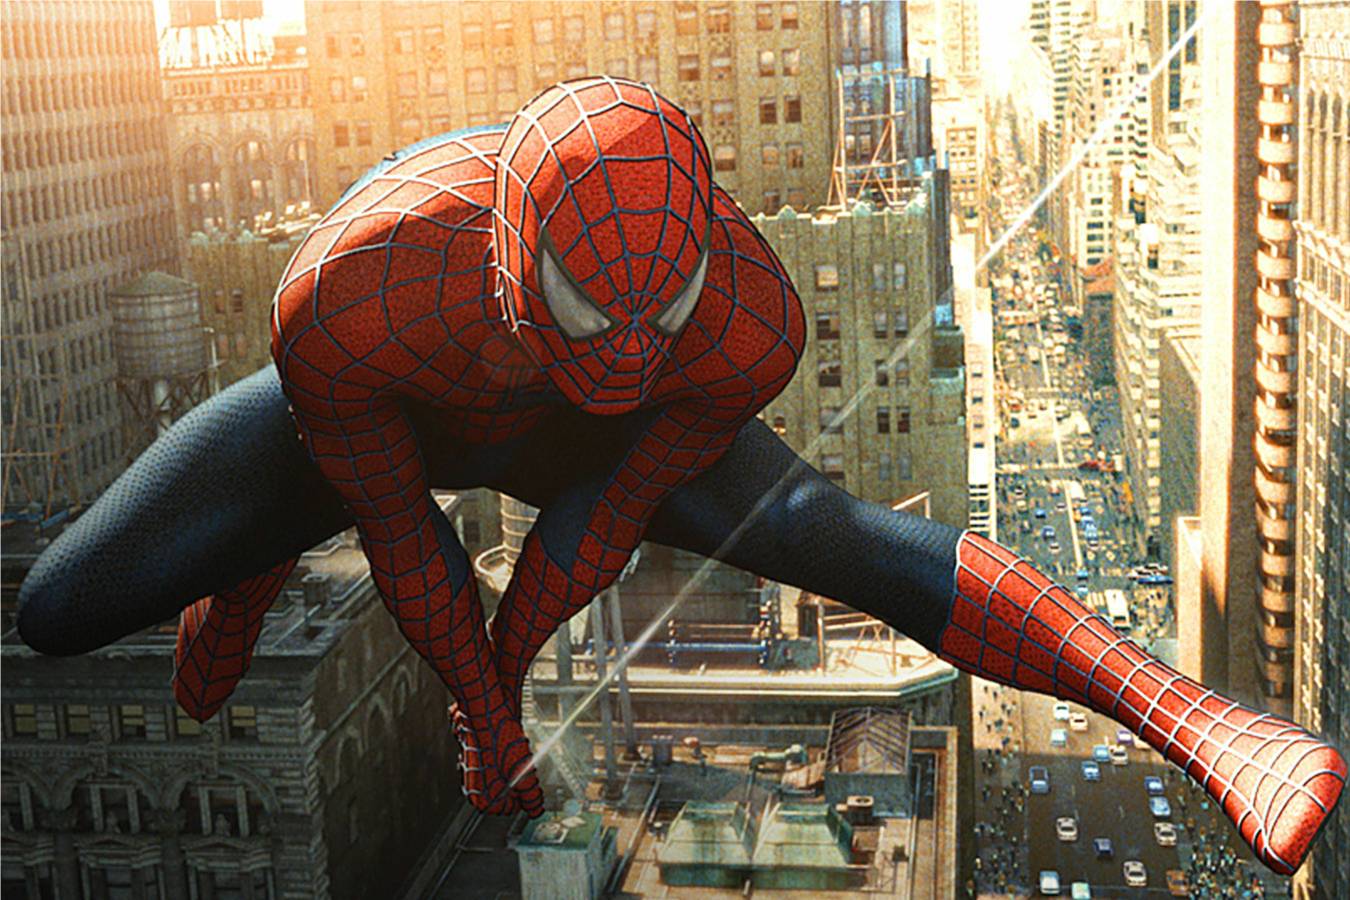 46+] Free Spiderman Widescreen Wallpaper - WallpaperSafari